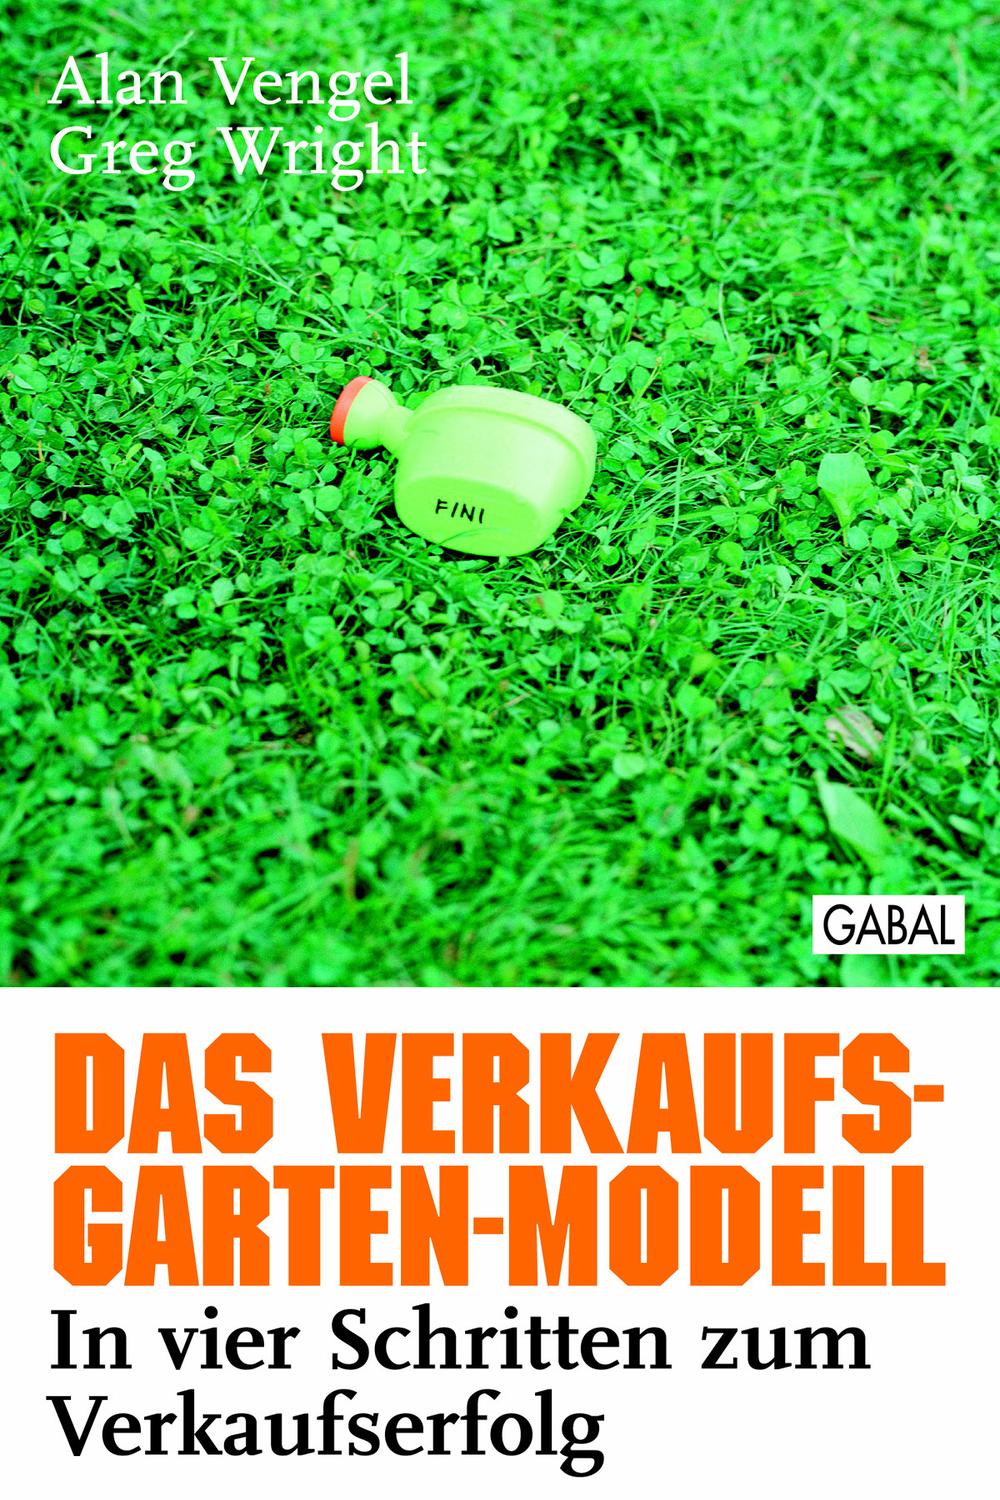 Das Verkaufs-Garten-Modell - Alan Vengel, Greg Wright